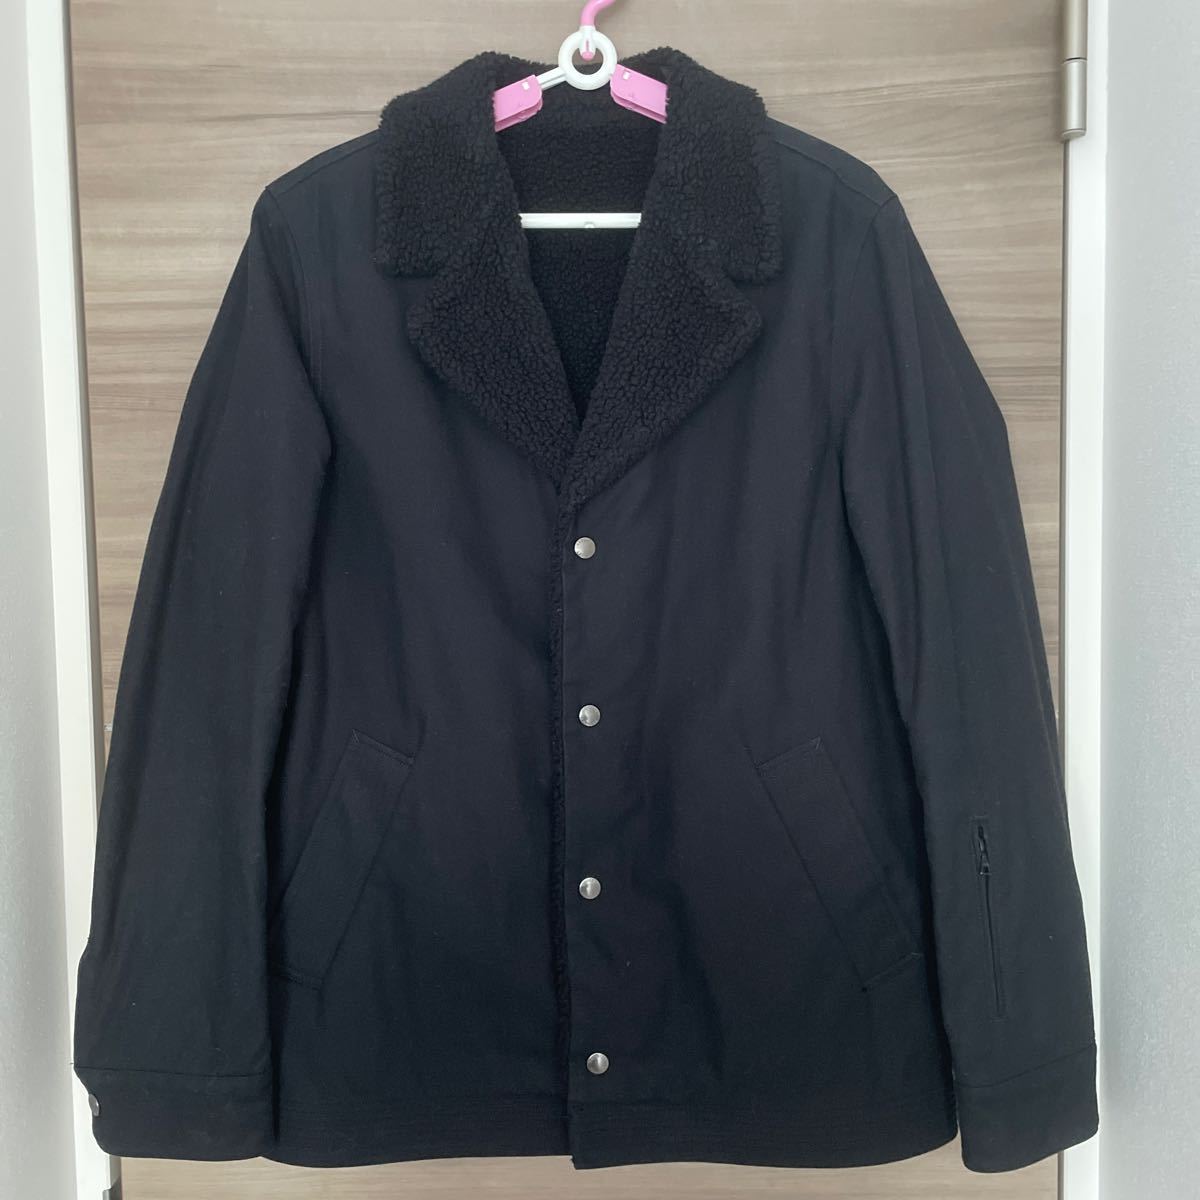 ほぼ新品 SOPH ジャケット 黒 thinsulate 3M 袖ポケット ソフネット SOPHNET